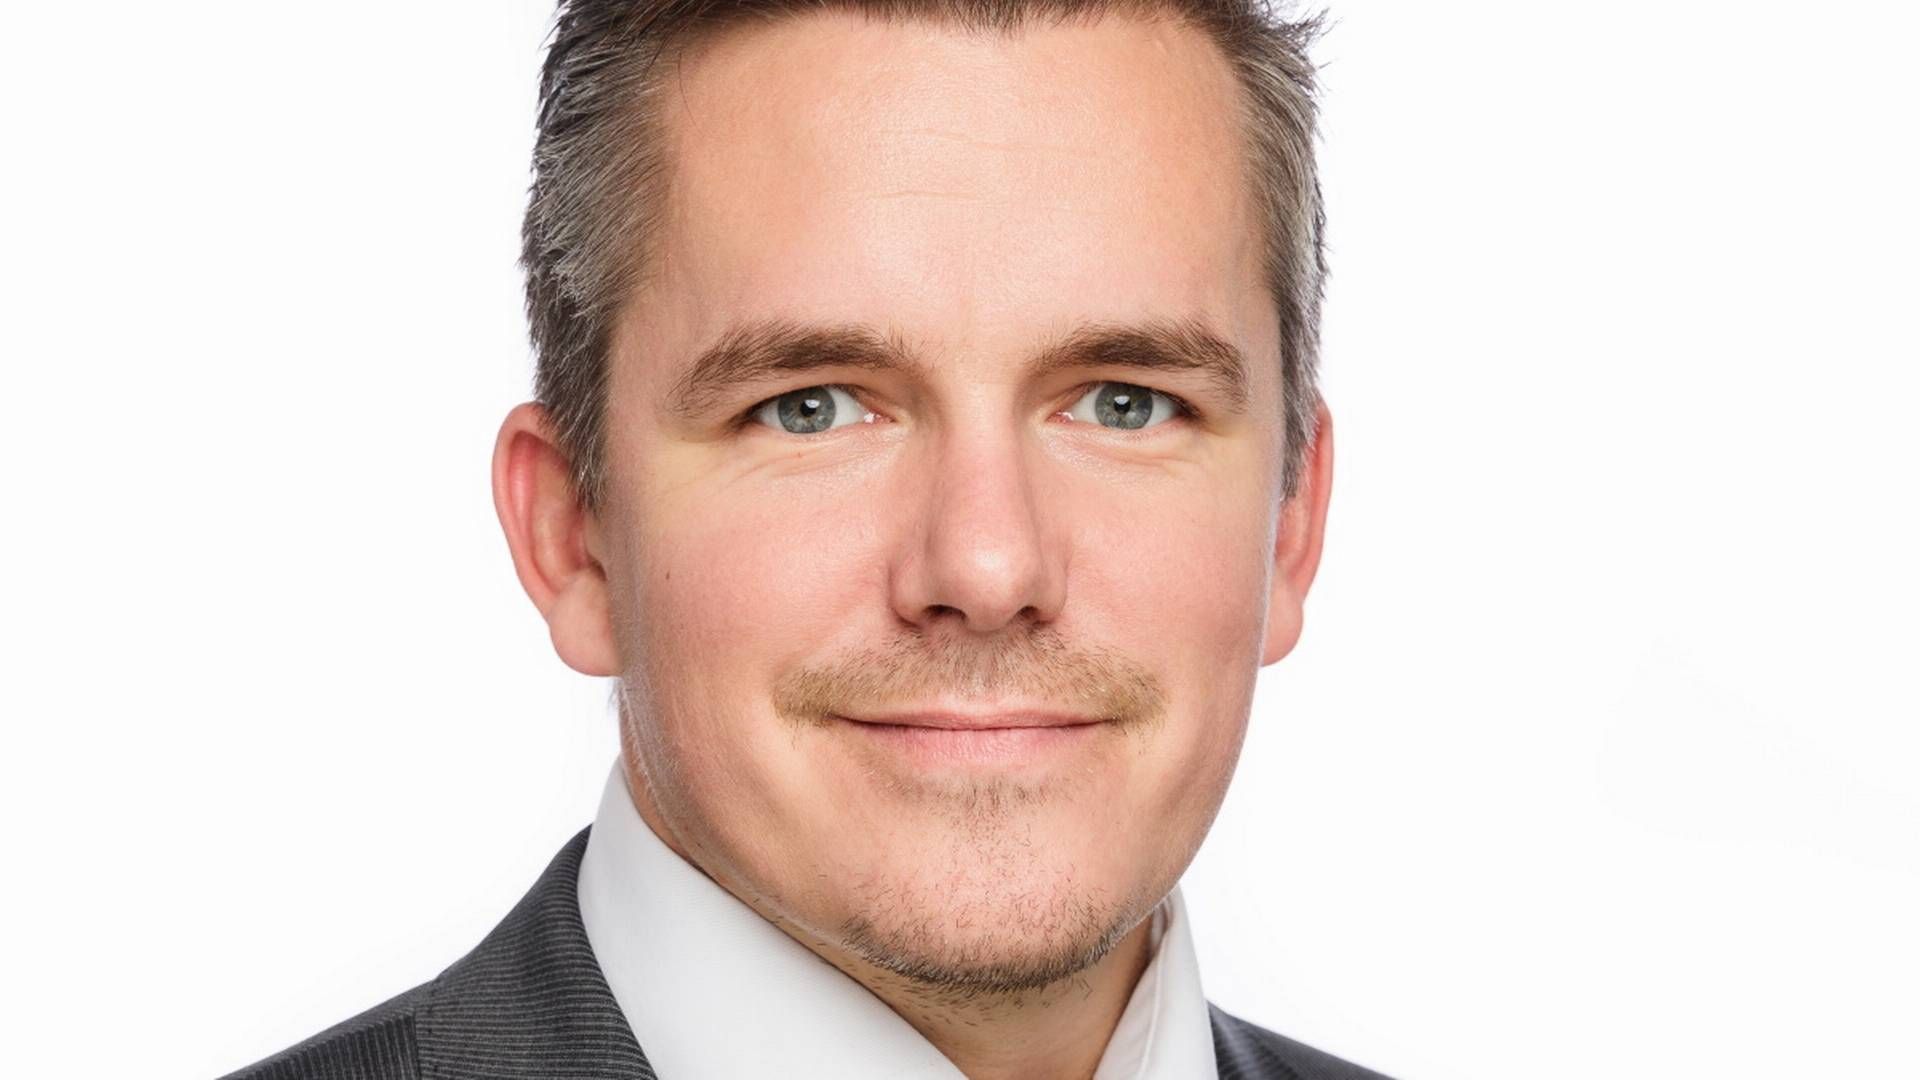 FORNØYD NREP LOGICENTERS-TOPP: Ruben Krantz Kringstad, Commercial Manager i Logicenters, kan endelig offentliggjøre avtalen med Schibsted | Foto: PR / Nrep Logicenters